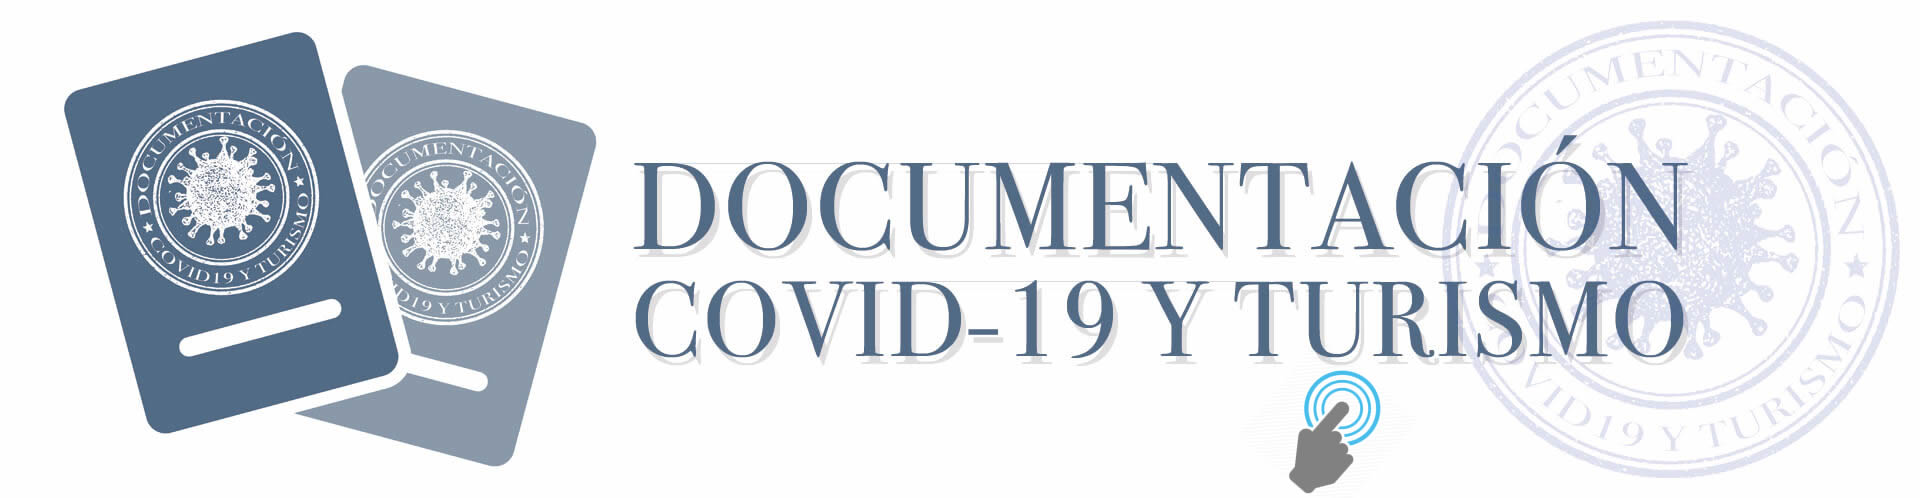 Documentacion-COVID19-Turismo-click